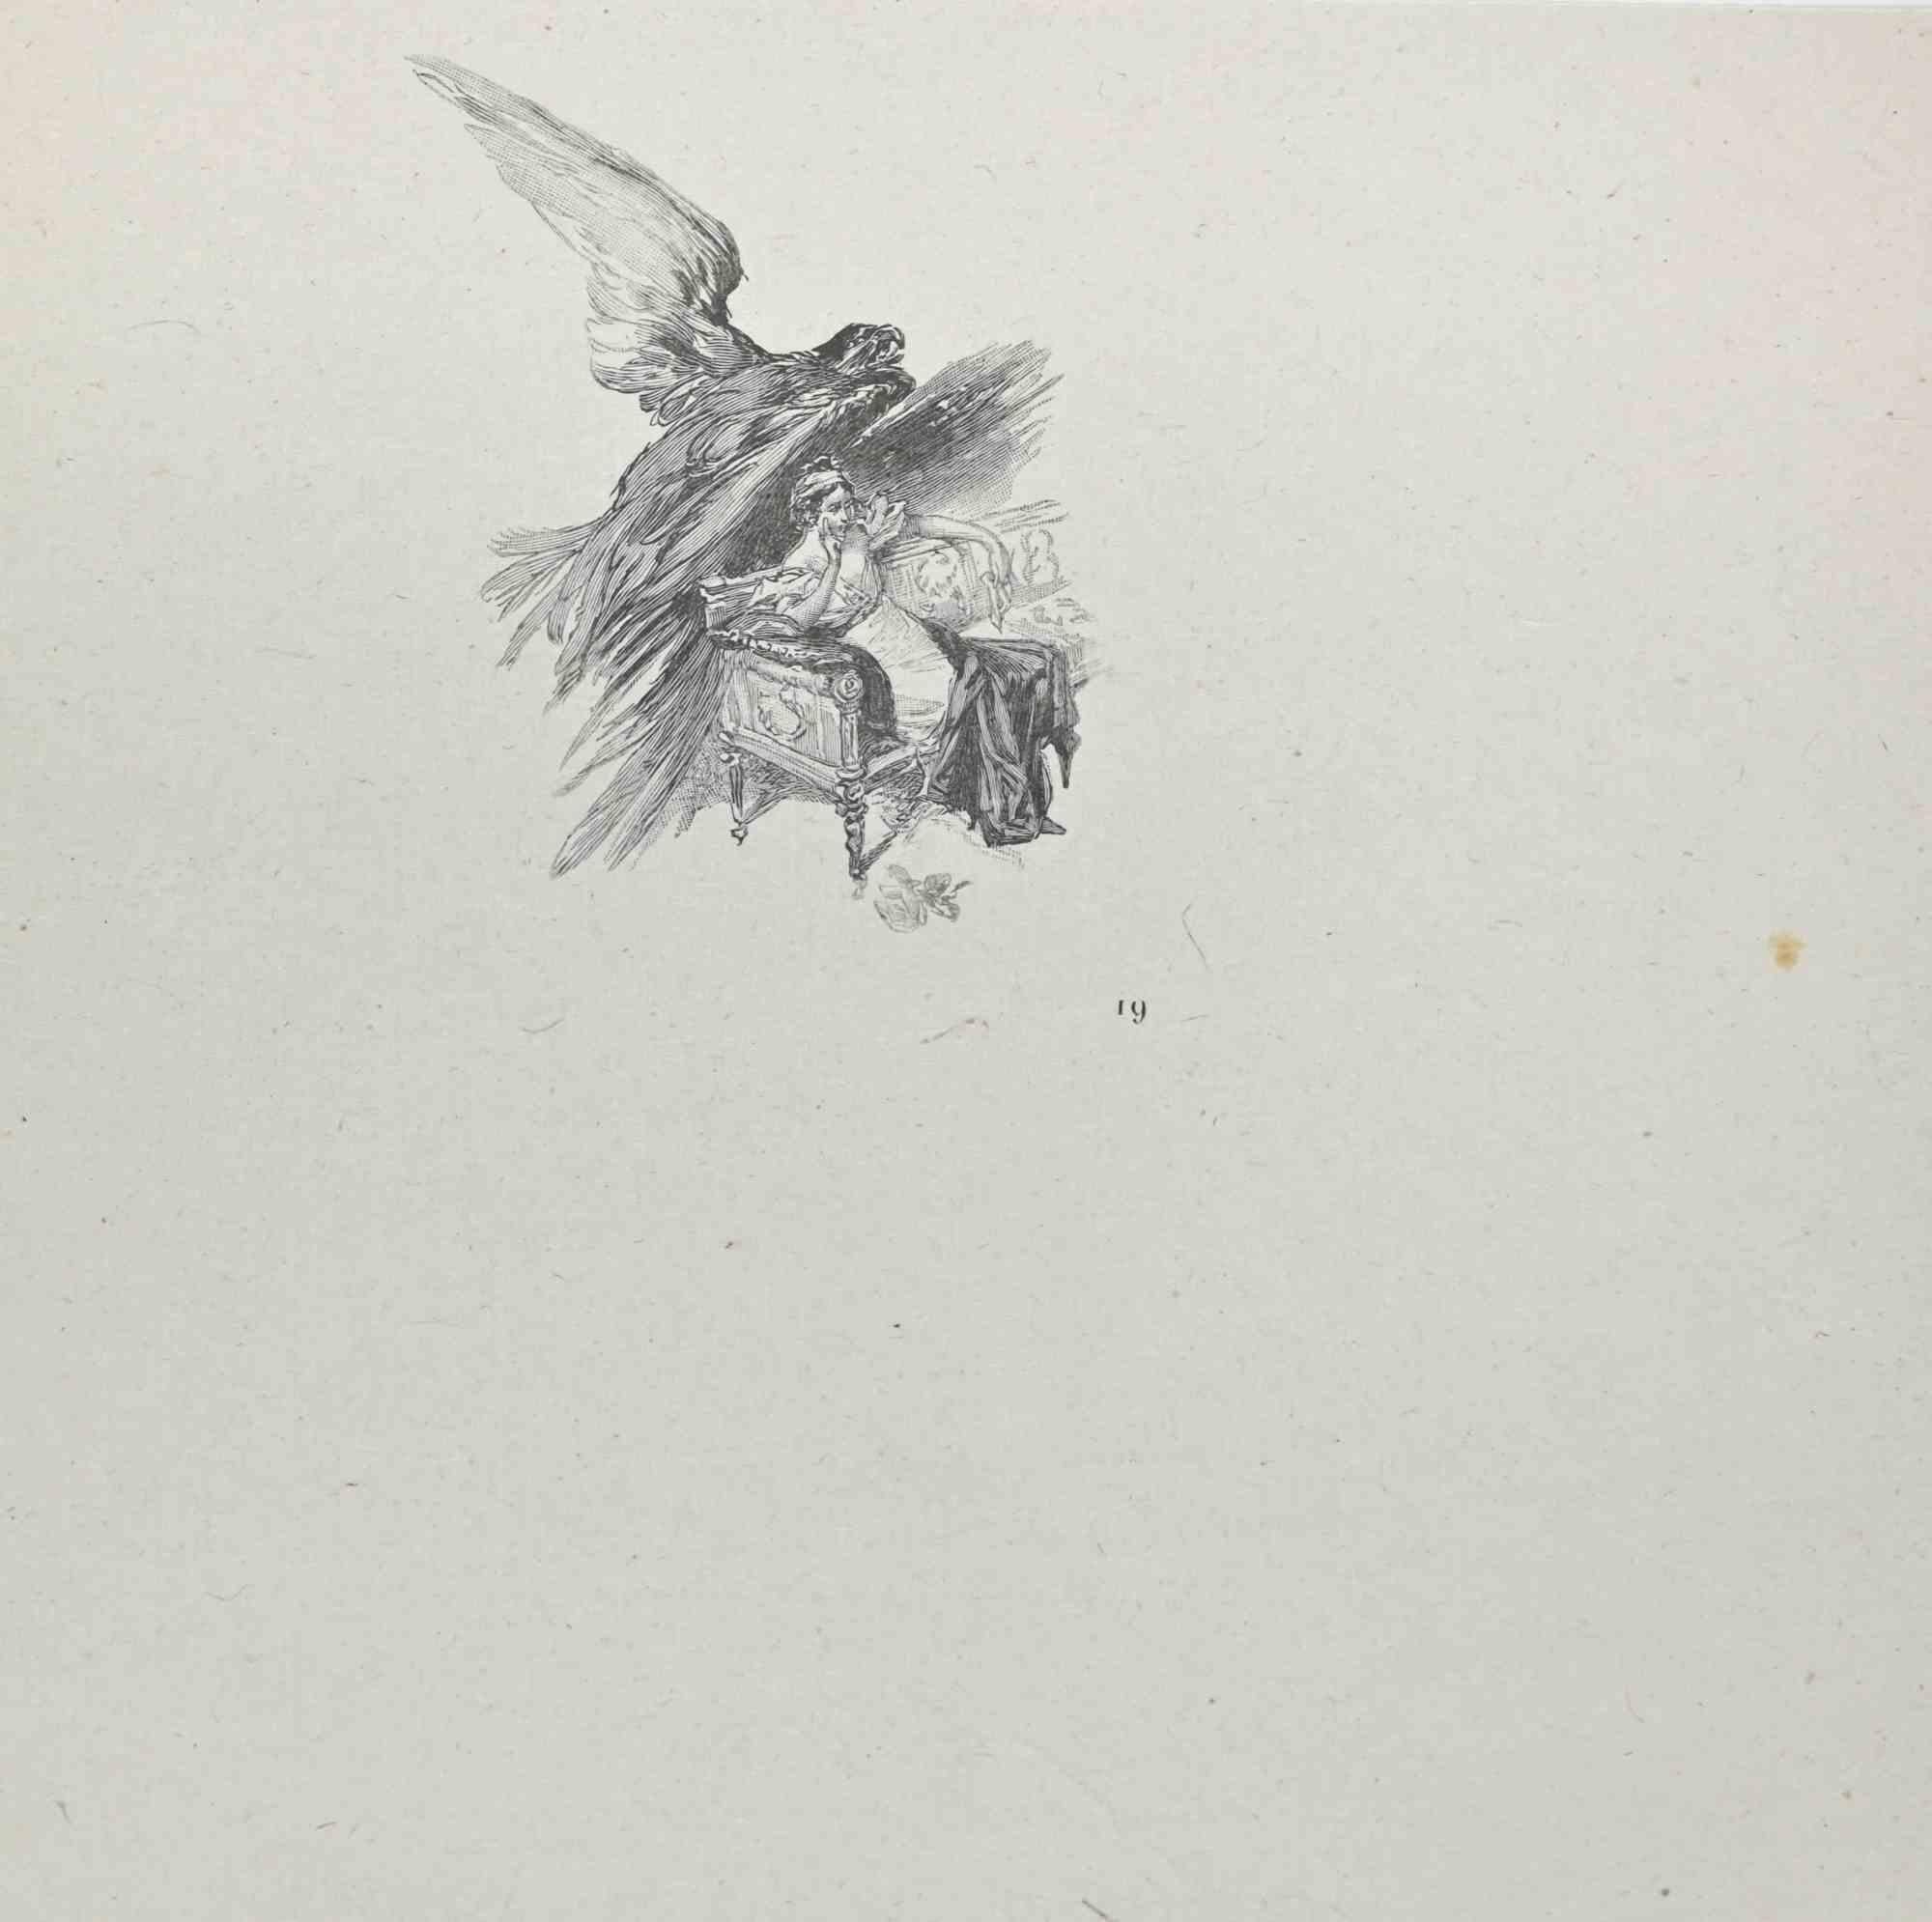 Der Flug ist eine Lithographie auf Papier von Hégésippe Moreau aus dem Jahr 1838.

Das Kunstwerk ist in gutem Zustand.

Hégésippe Moreau (1810-1838) war ein französischer Lyriker. Der romantische Mythos wurde durch die Veröffentlichung seines